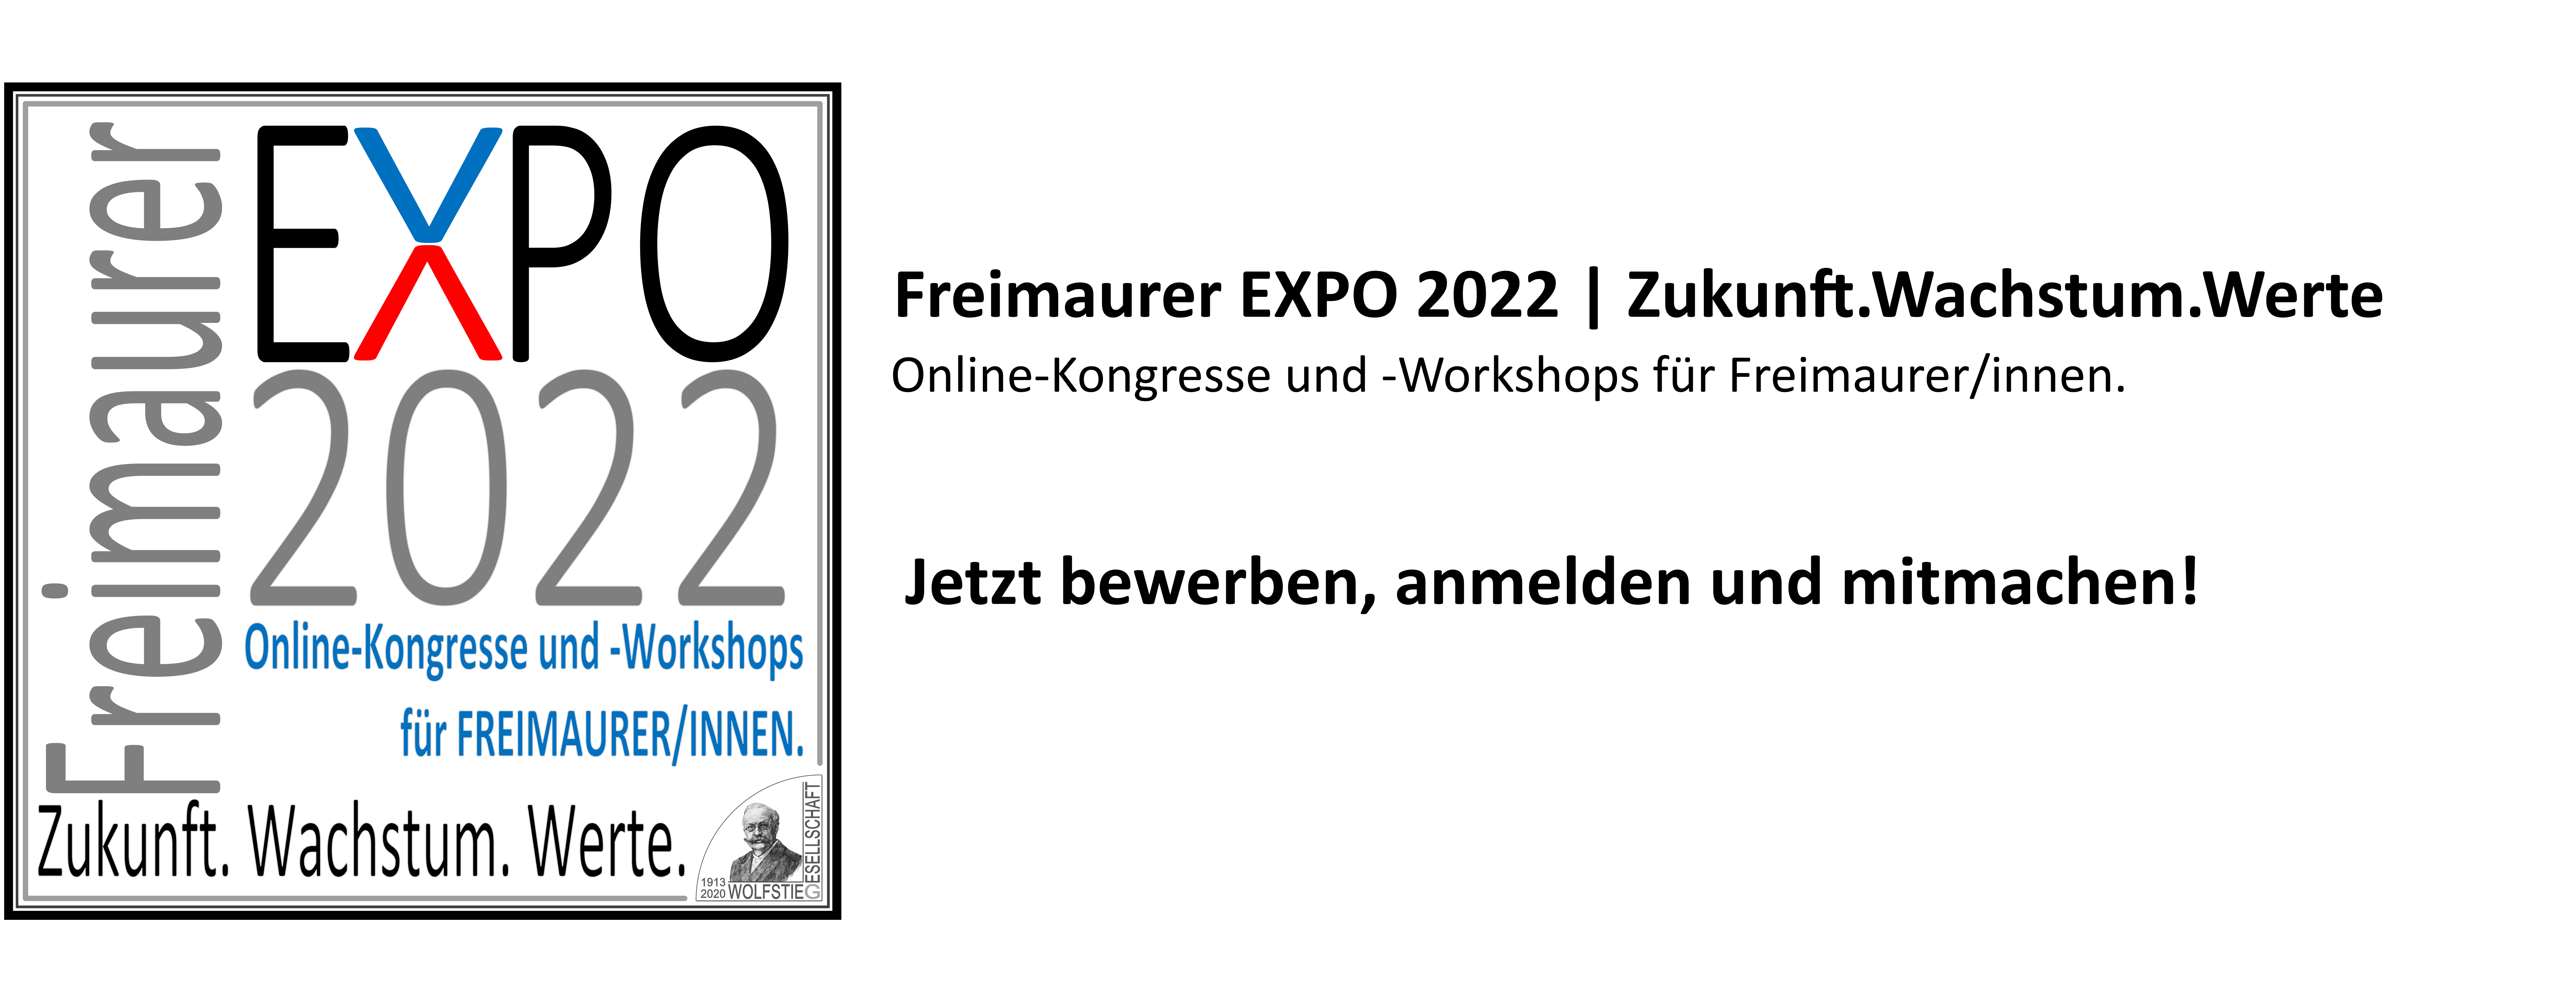 Freimaurer EXPO 2022 | Zukunft.Wachstum.Werte Online-Kongresse und -Workshops für Freimaurer/innen.